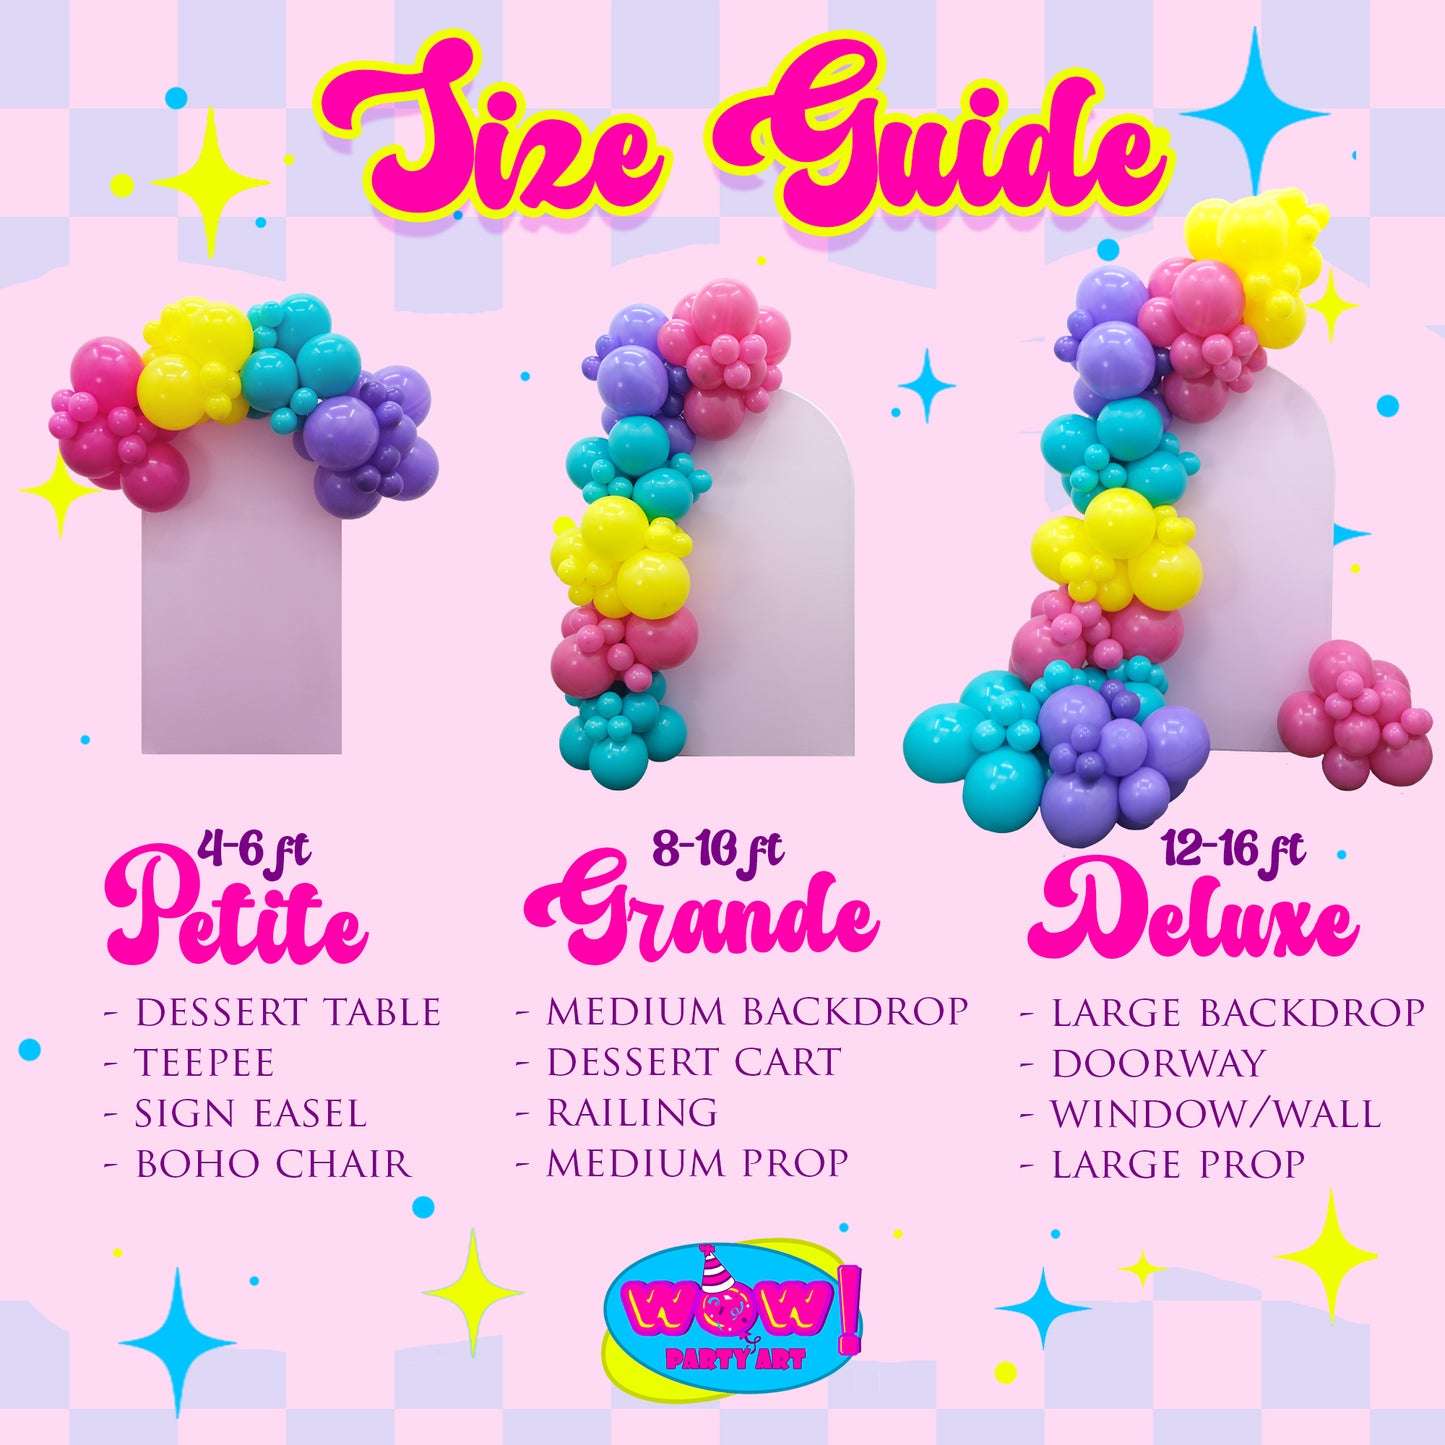 Little Cutie DIY Balloon Arch Garland Kit | Orange Blush White | Cutie Theme Baby Shower Gender Reveal Kids Birthday Party Balloon Decor